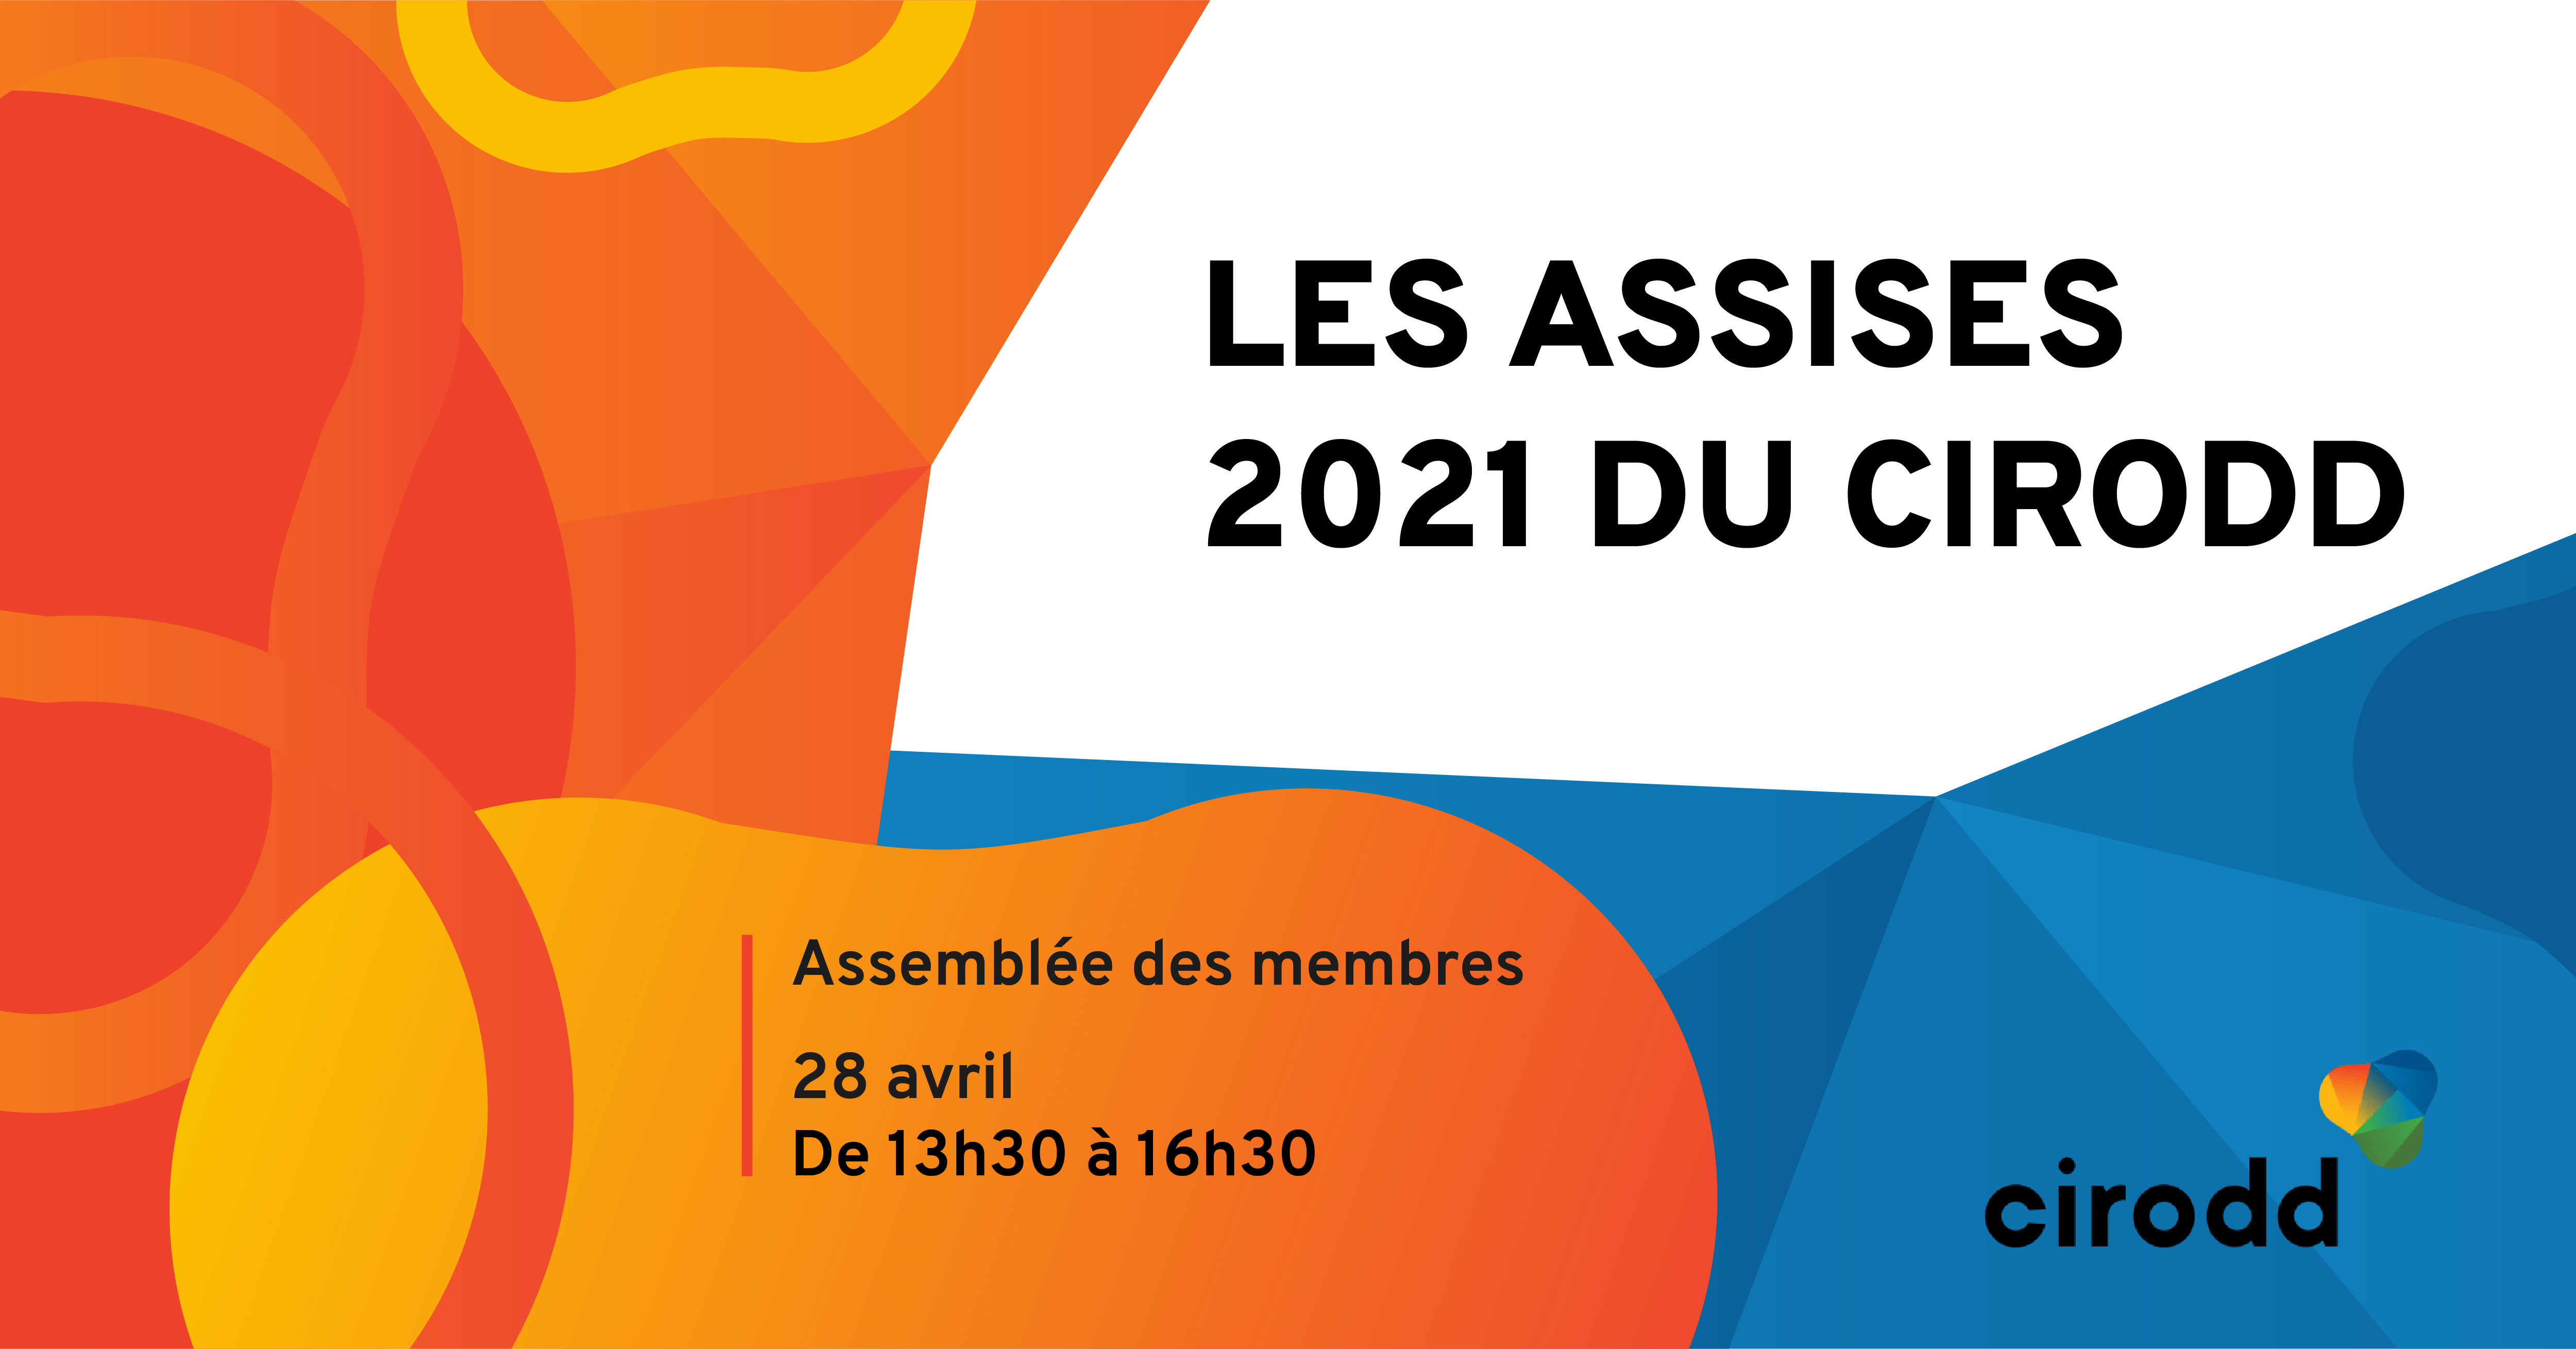 Les Assises 2021 du CIRODD – Assemblée des membres